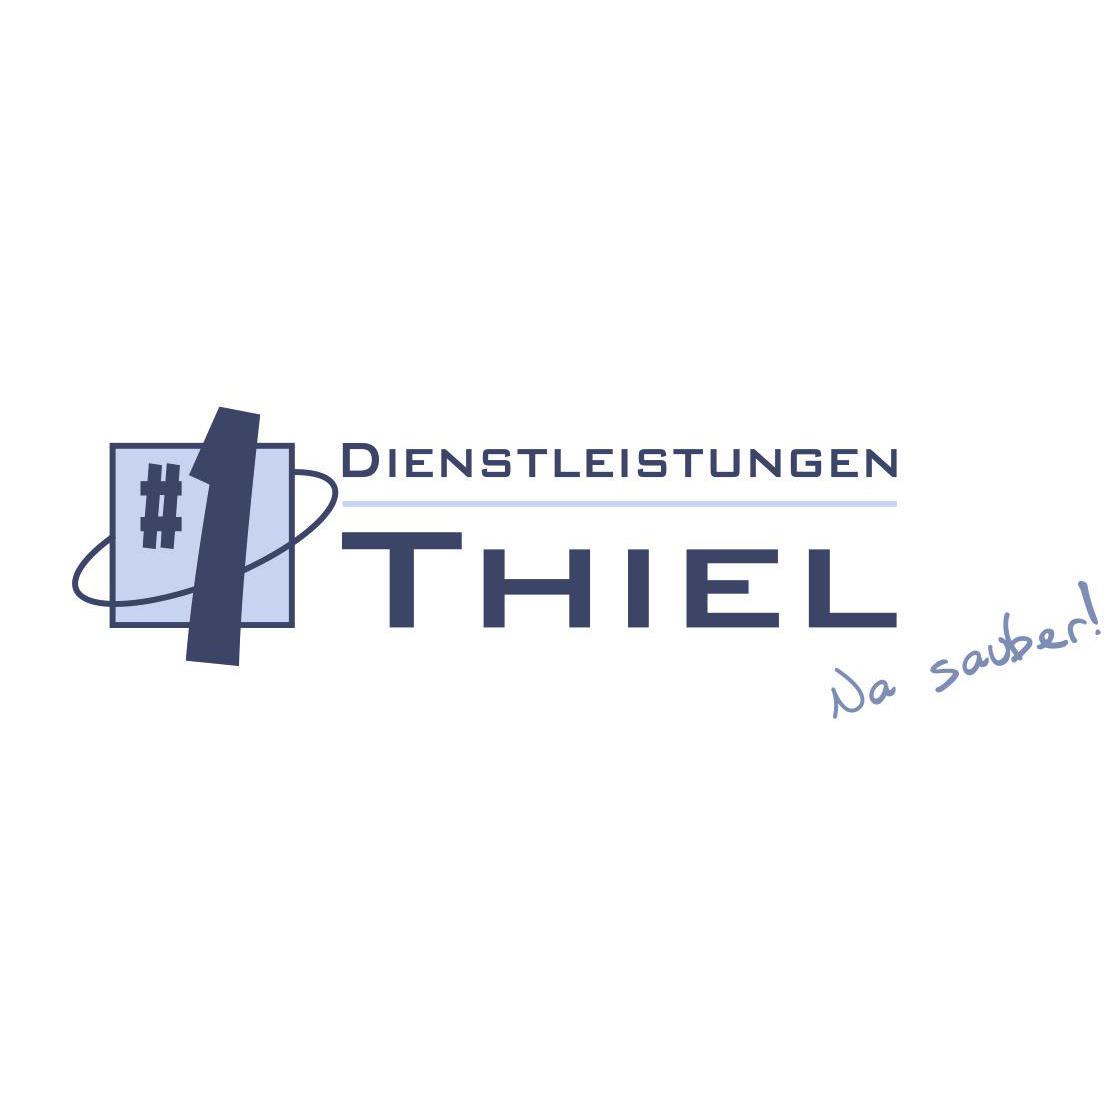 No.1 Dienstleistungen Thiel GmbH & Co. KG  